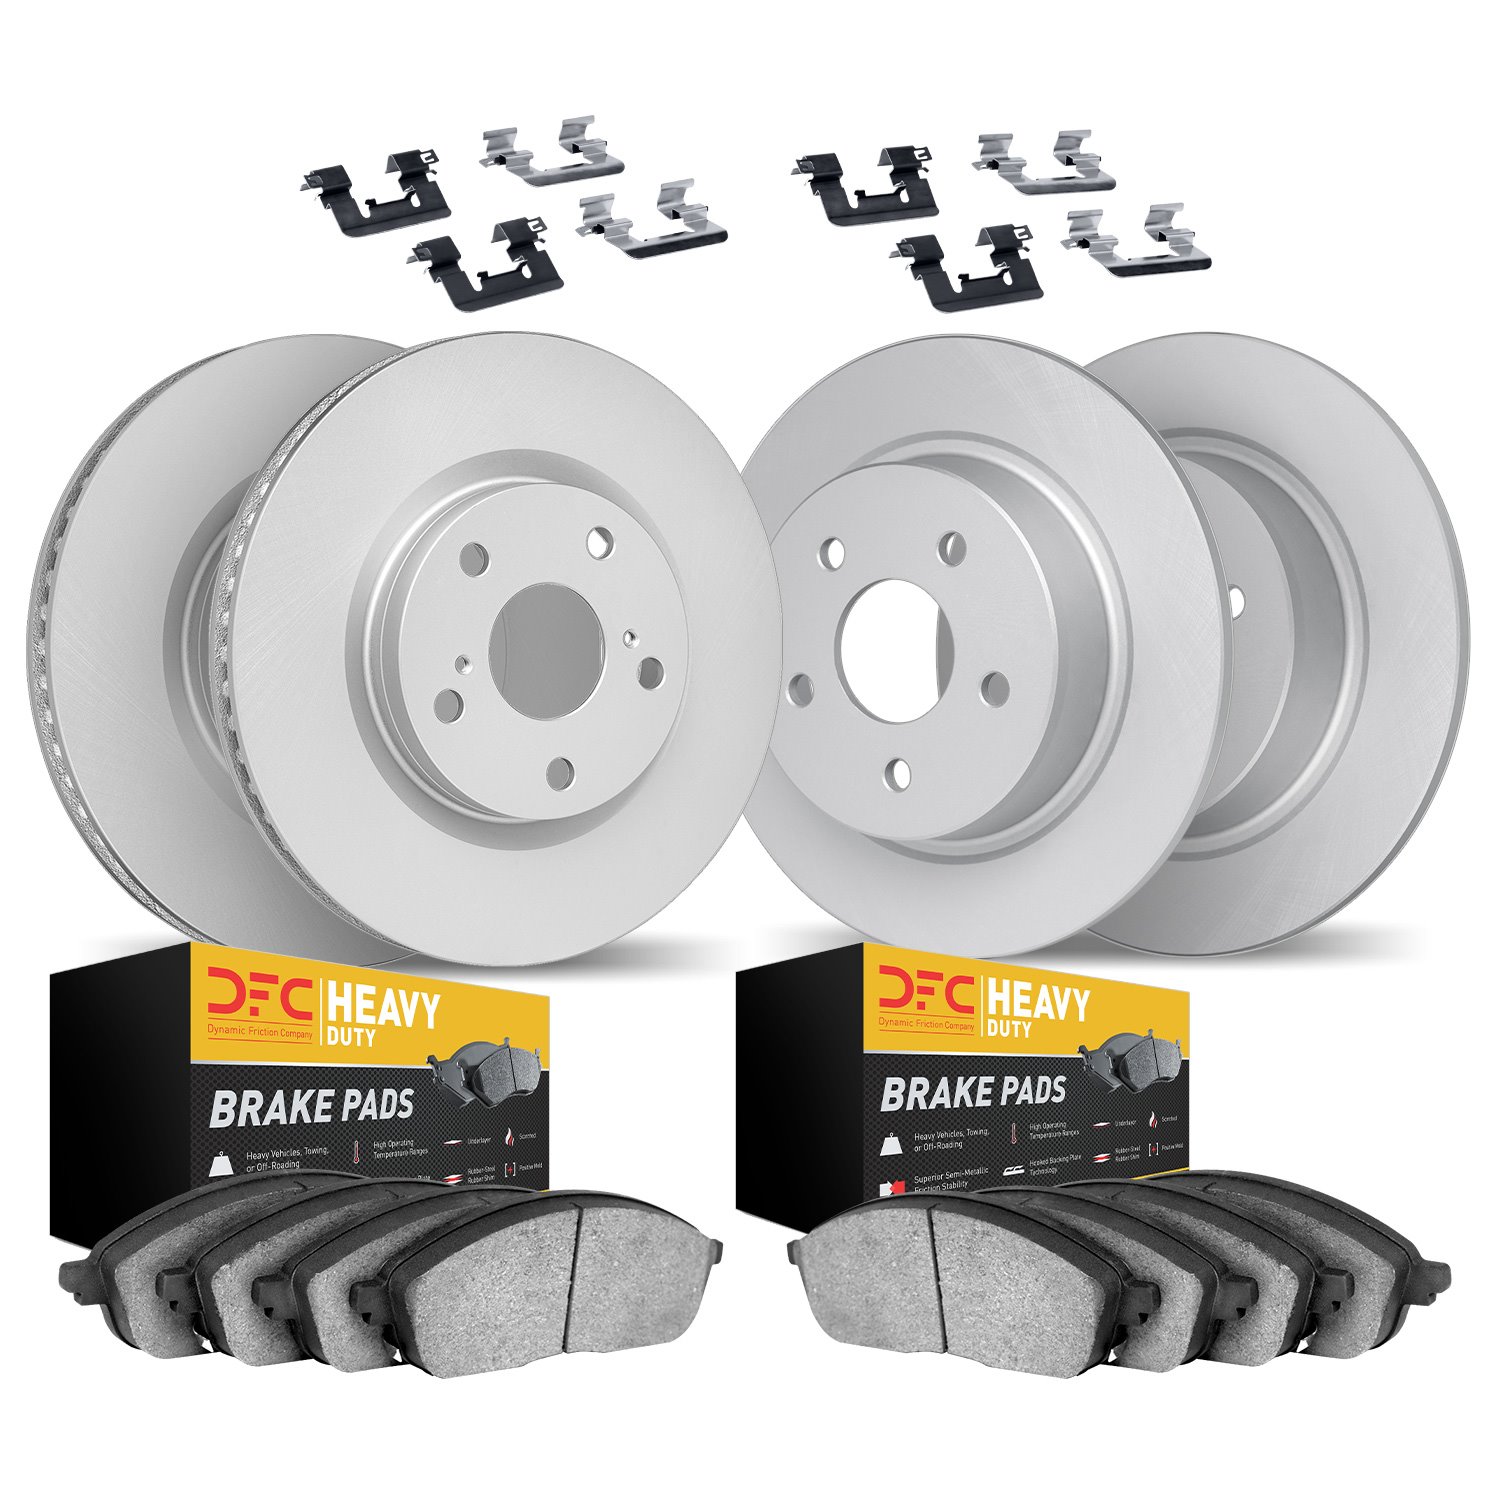 4214-42046 Geospec Brake Rotors w/Heavy-Duty Brake Pads & Hardware, 2007-2018 Mopar, Position: Front and Rear